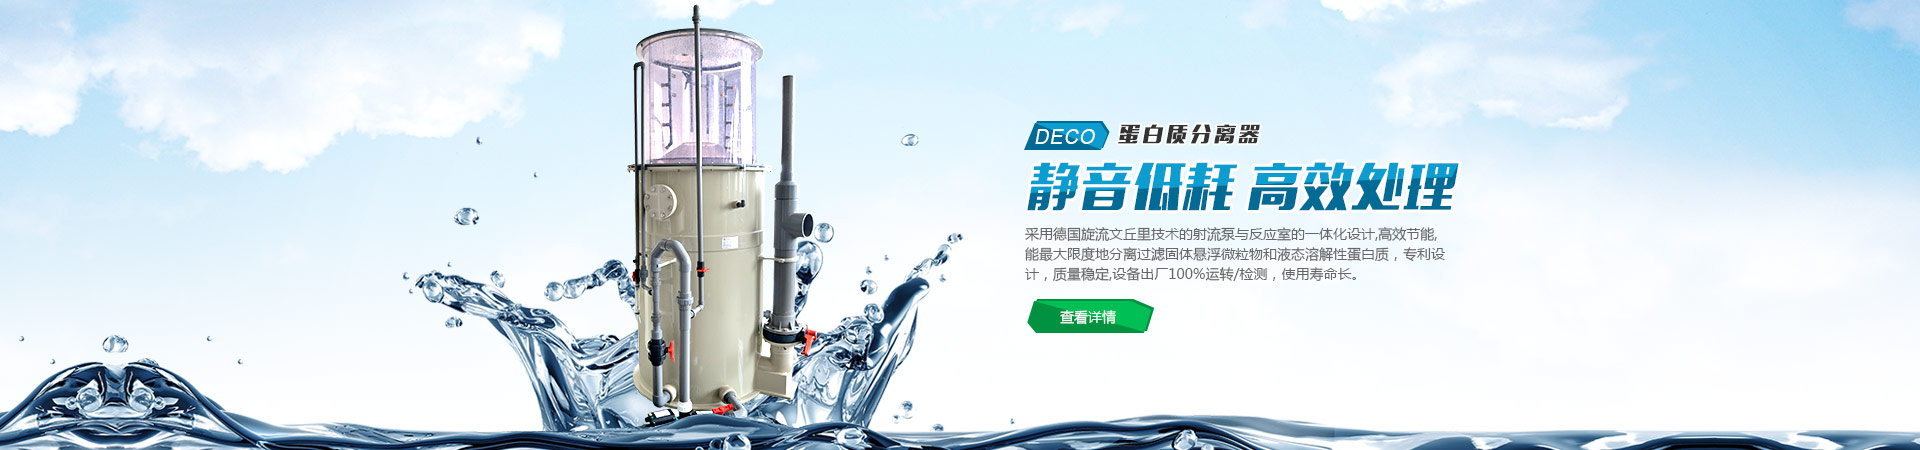 北京吉备应急装备科技有限公司
